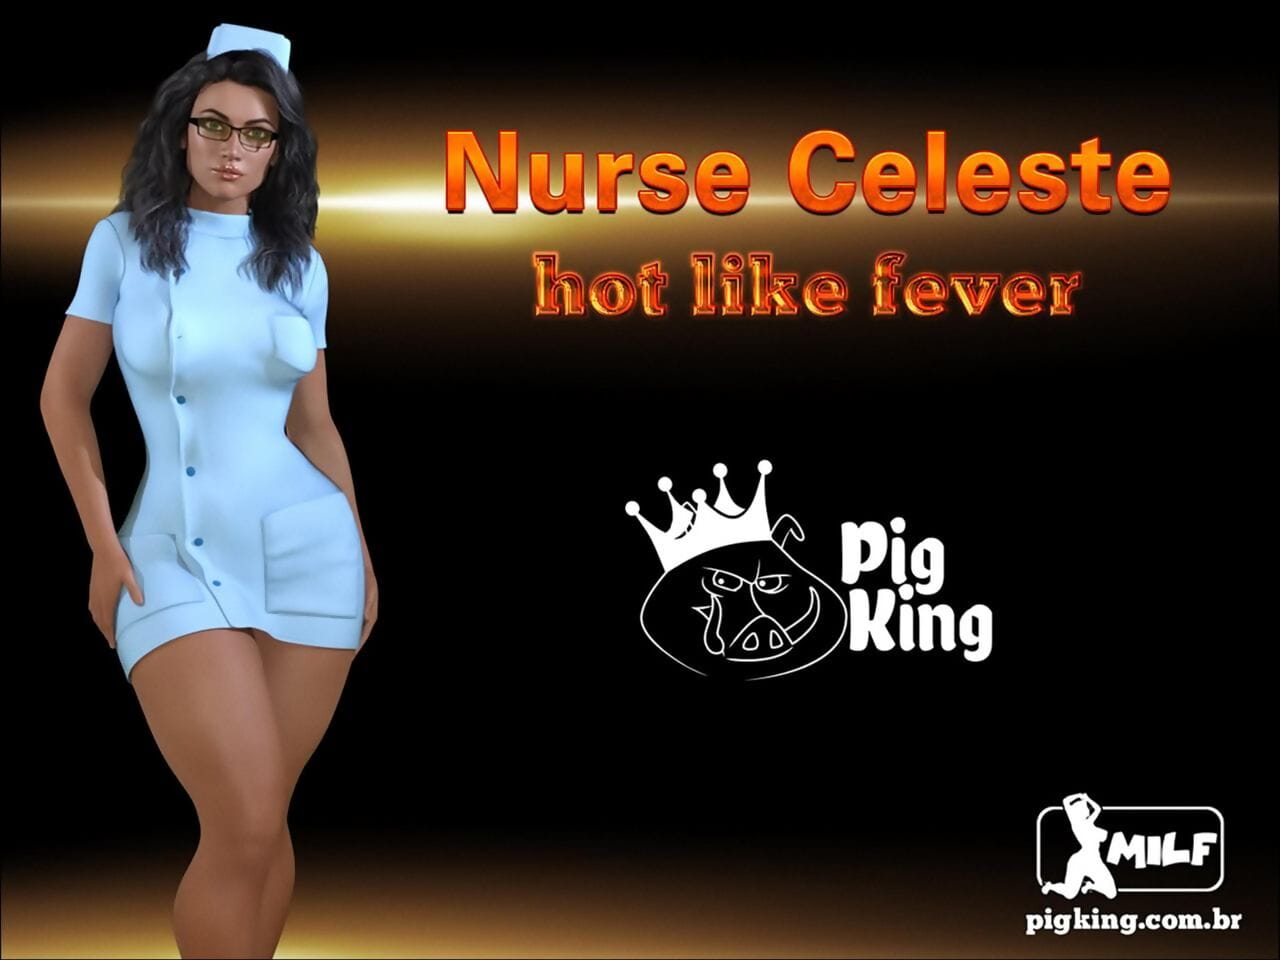 护士 Celeste page 1